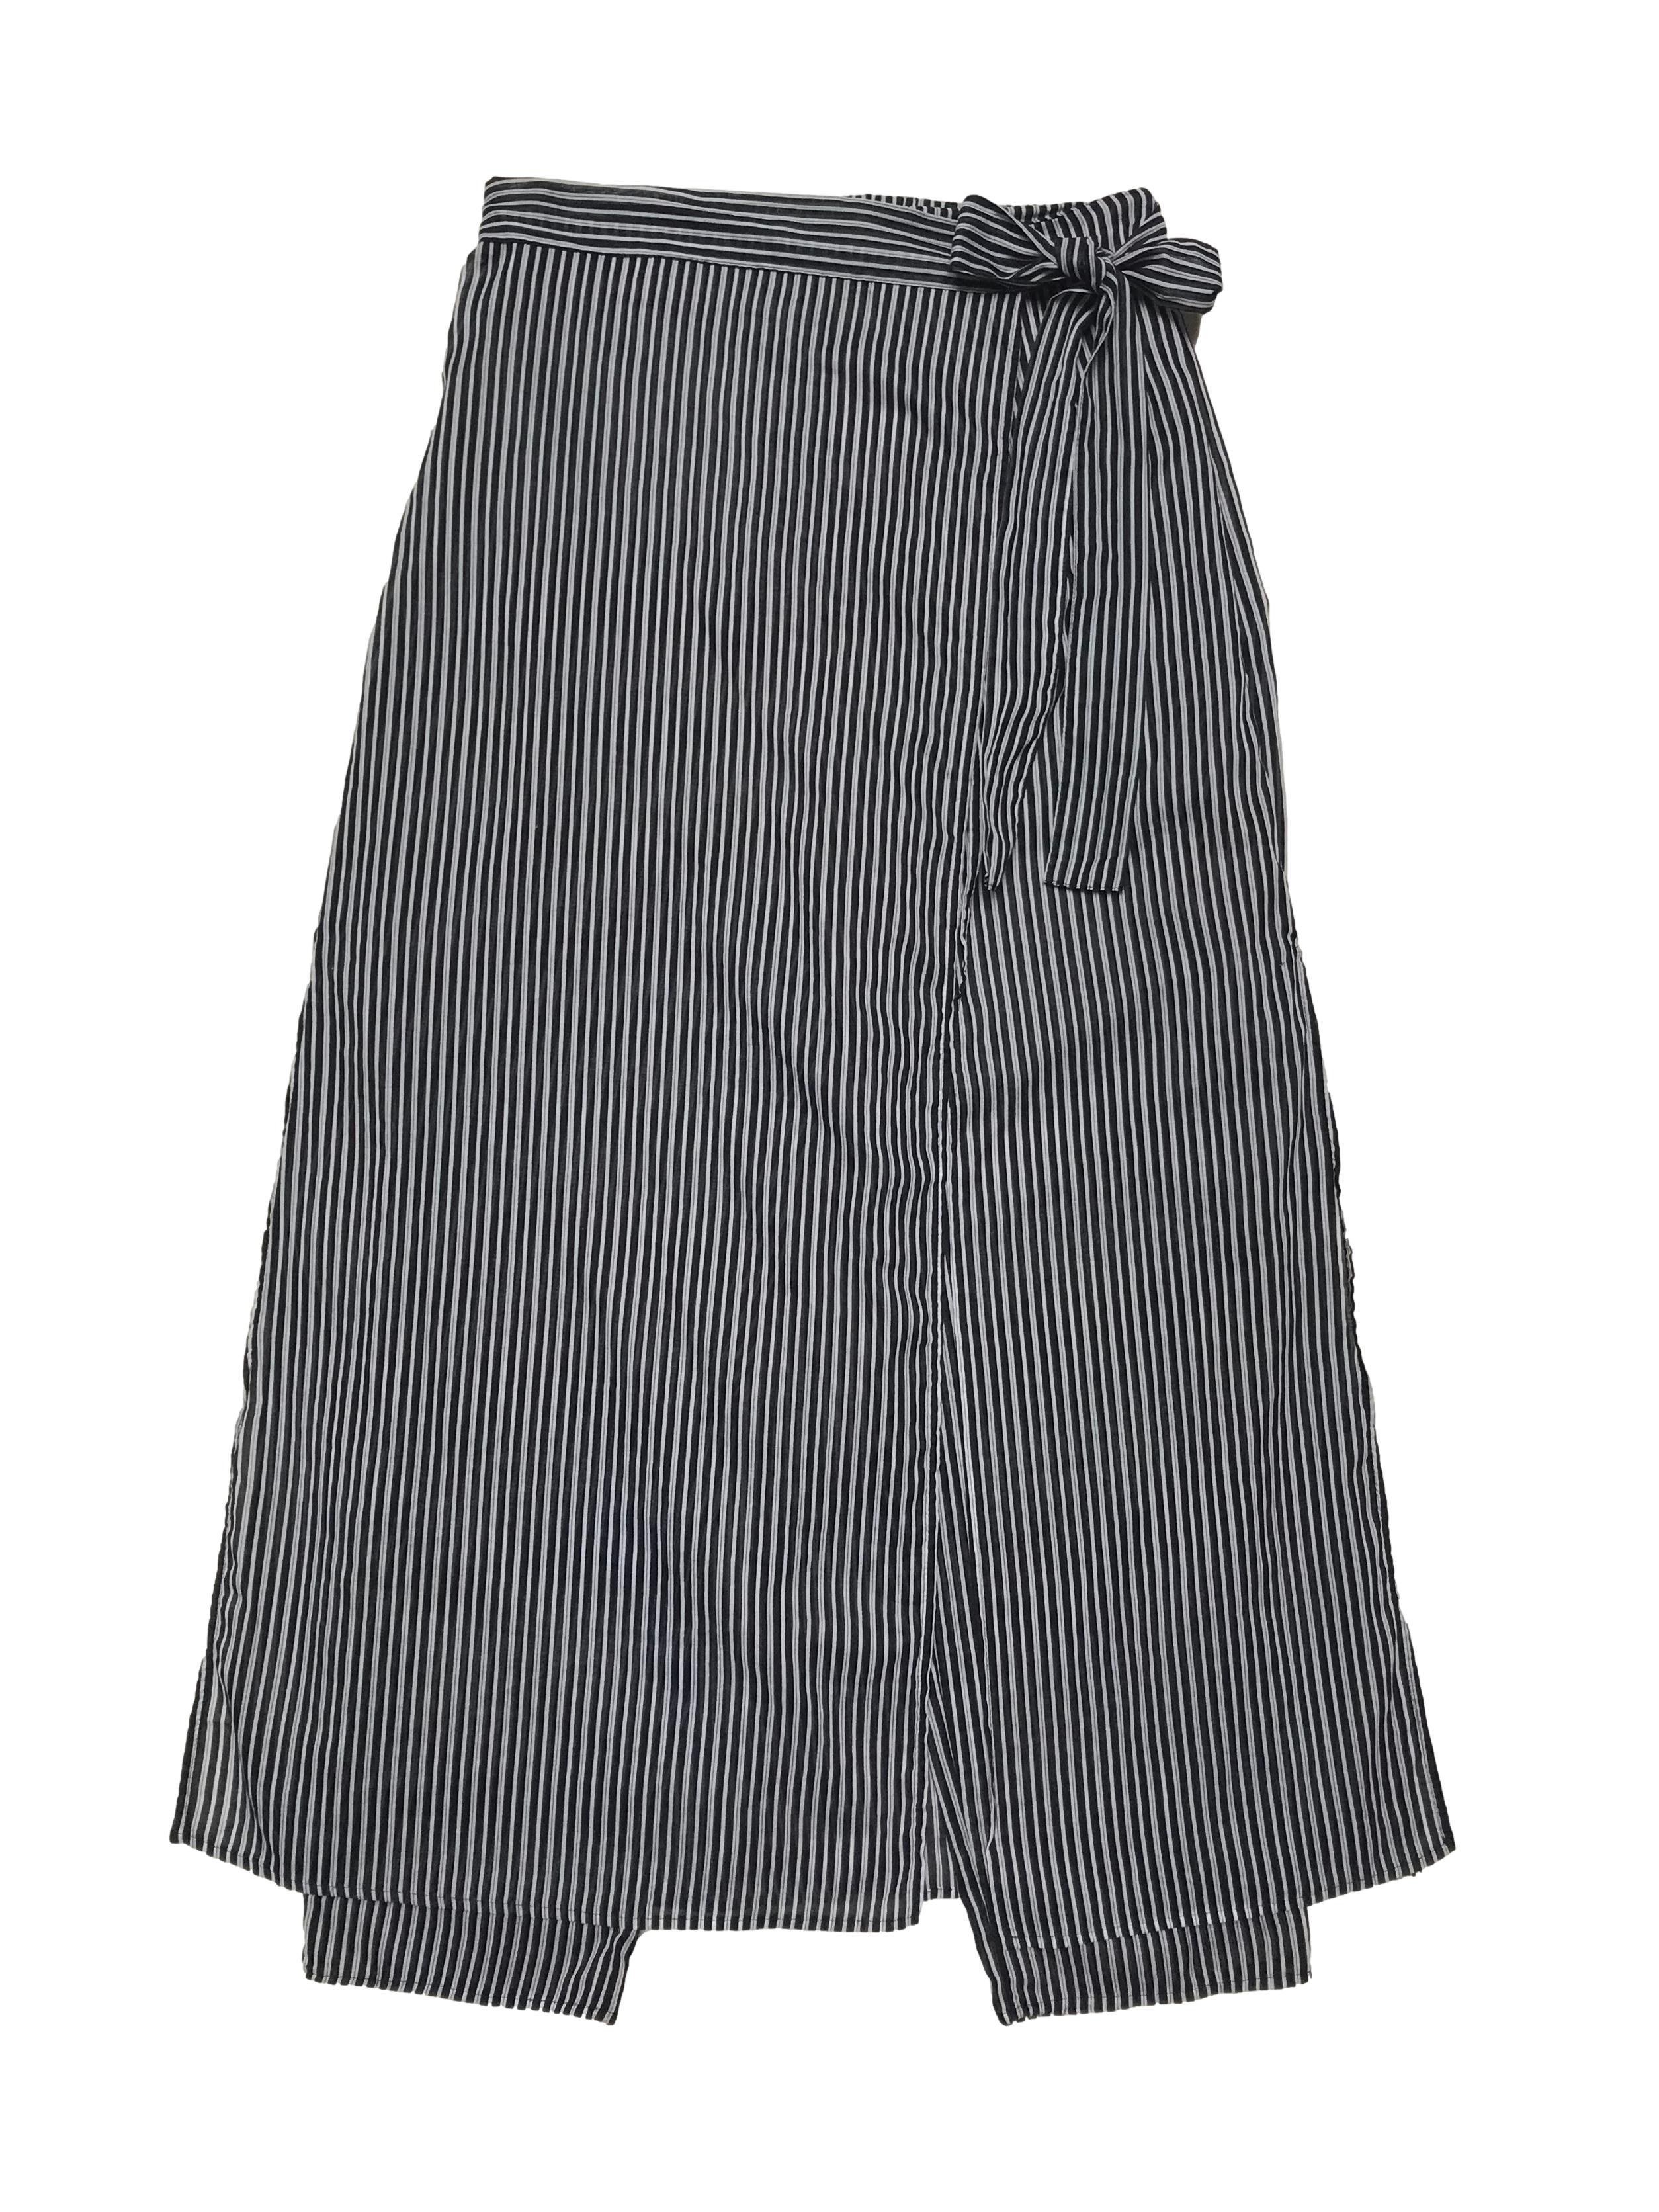 Falda pantalón a rayas blanco y negro, delantero cruzado que se amarra al lado, pretina con elástico posterior. Cintura 66cm sin estirar Largo 92cm